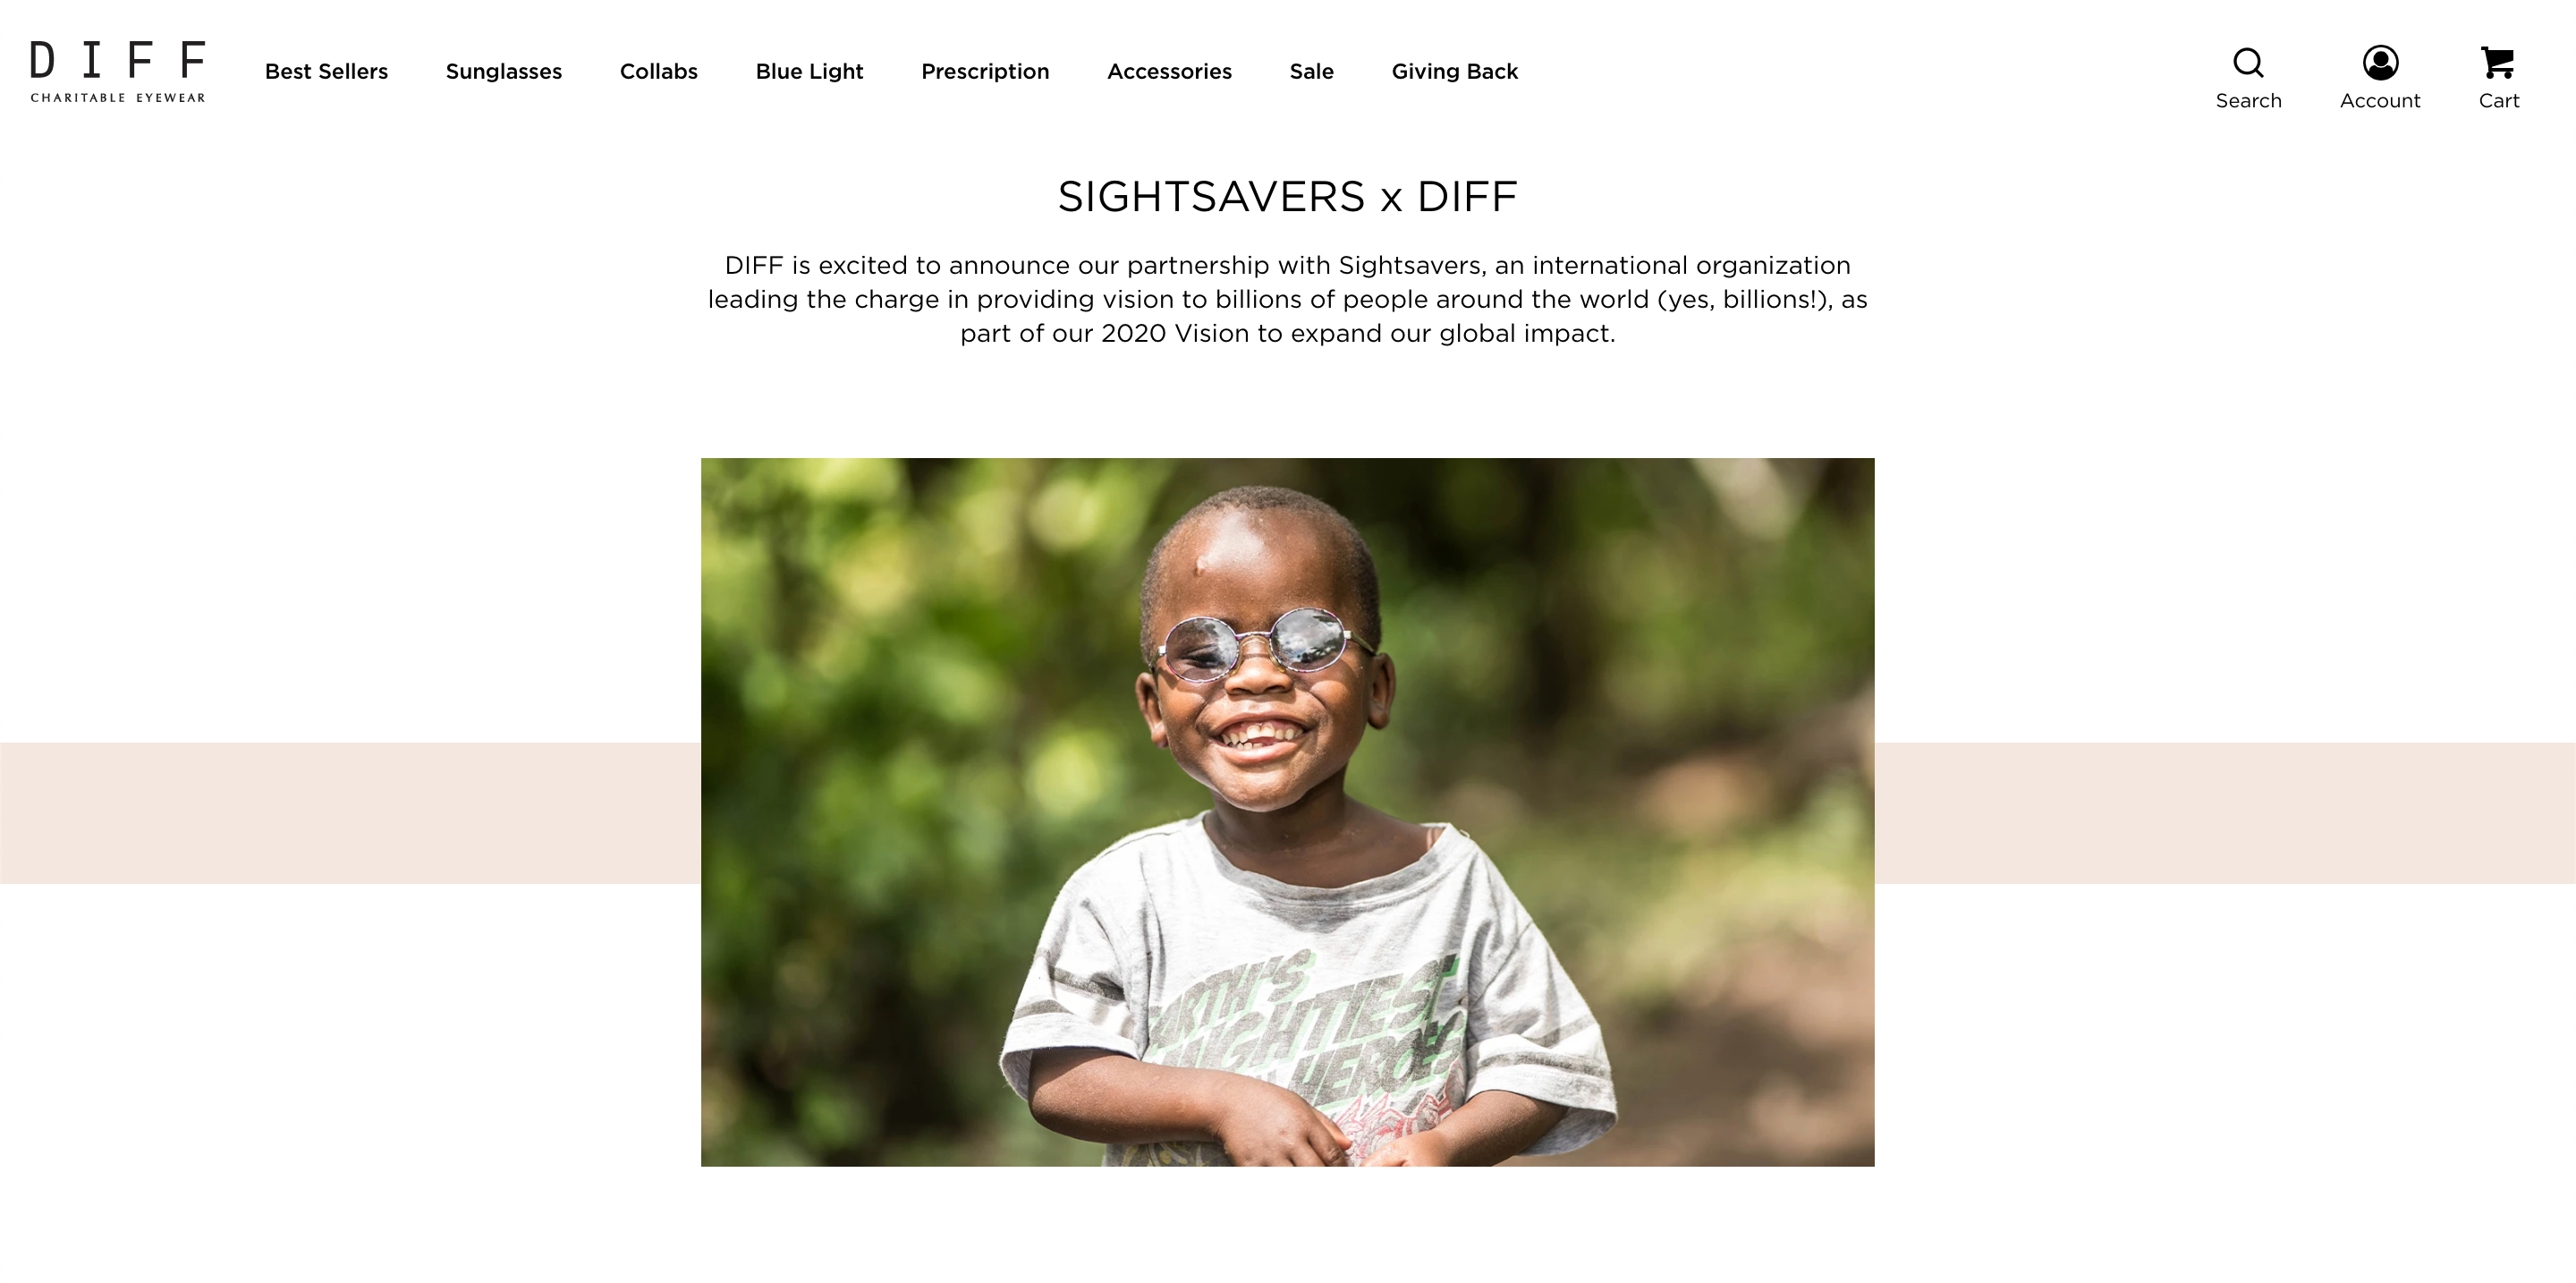 Sezione del sito di Diff che descrive la collaborazione con l'associazione Sightsavers